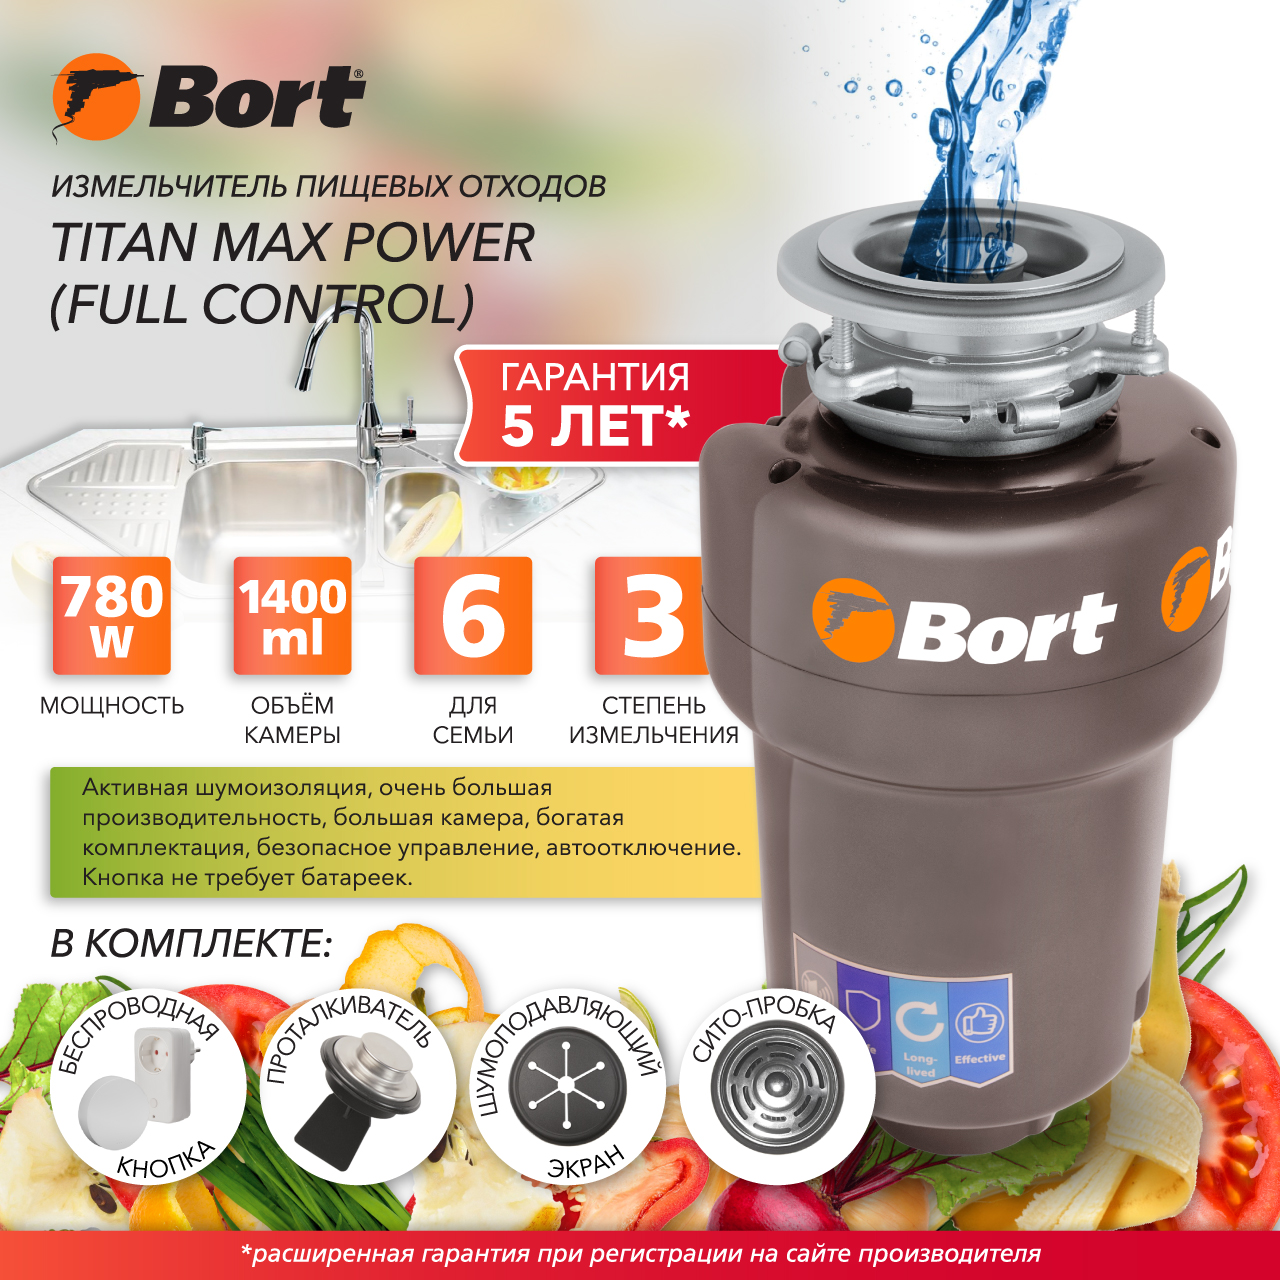 Измельчитель пищевых отходов Bort TITAN MAX POWER FULLCONTROL (93410266) серебристый измельчитель пищевых отходов bort titan 4000 control 93410242 серебристый